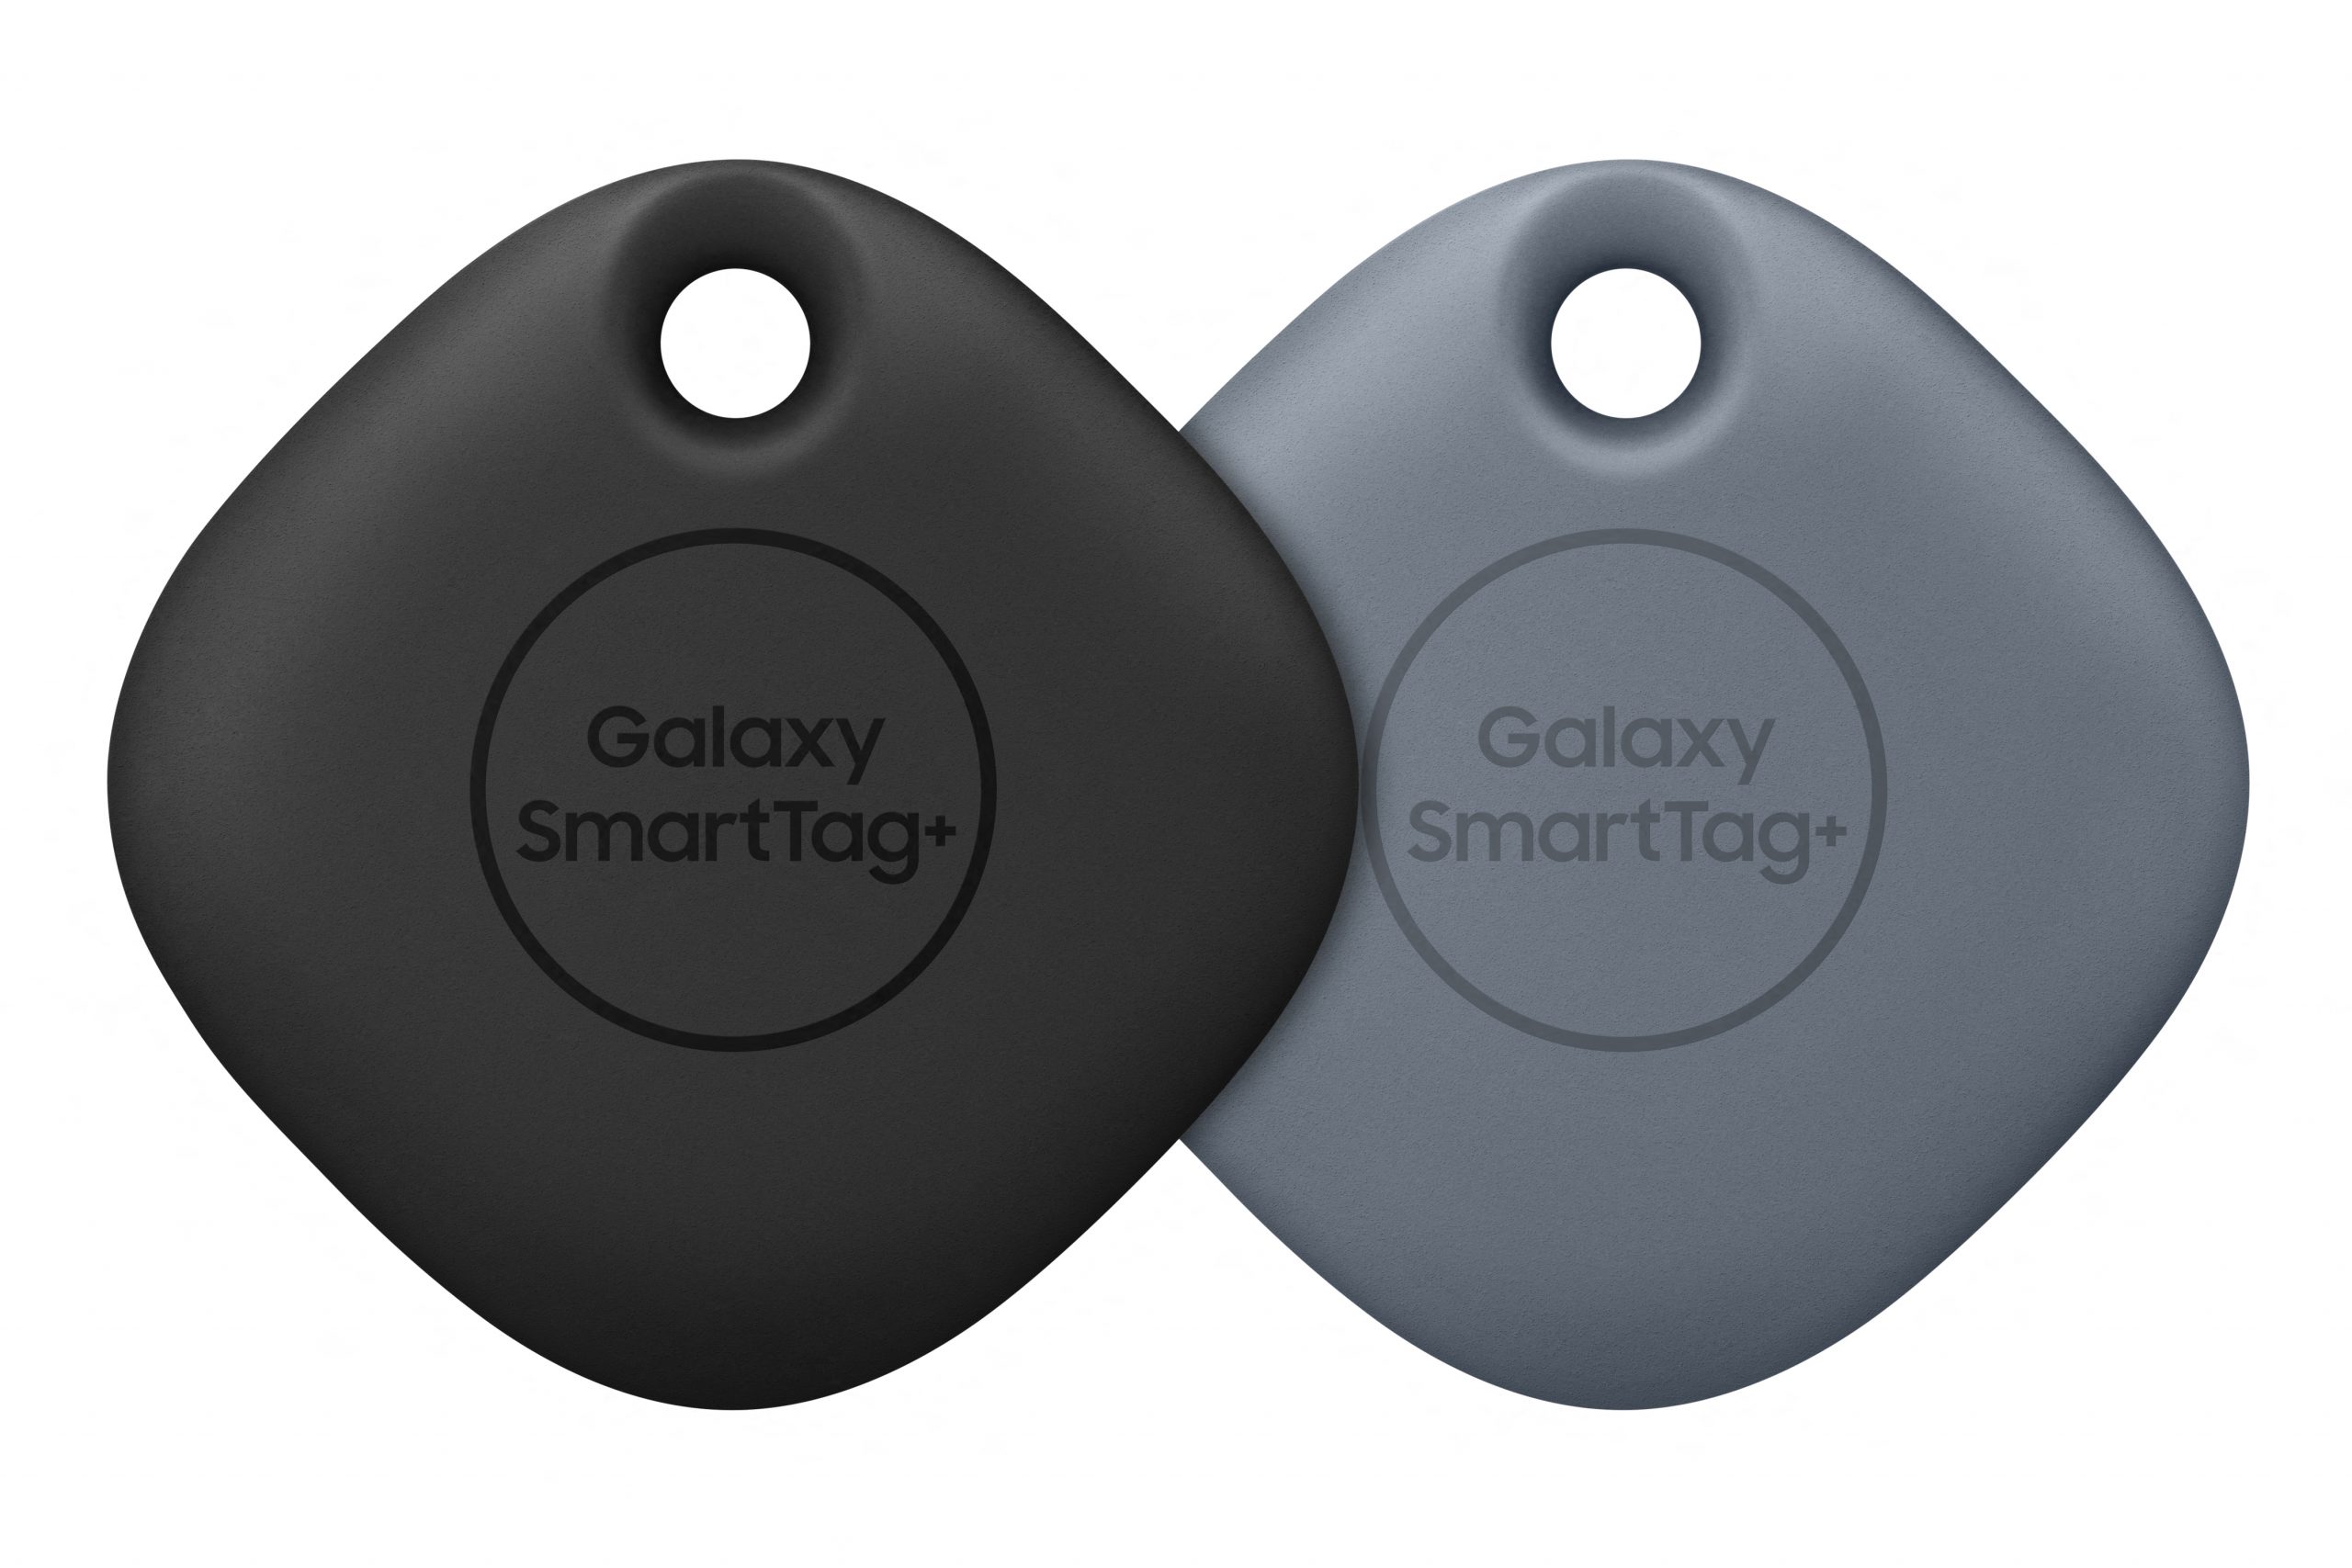 Galaxy SmartTag+, rastreador Bluetooth mais avançado, passa na Anatel | Gadgets